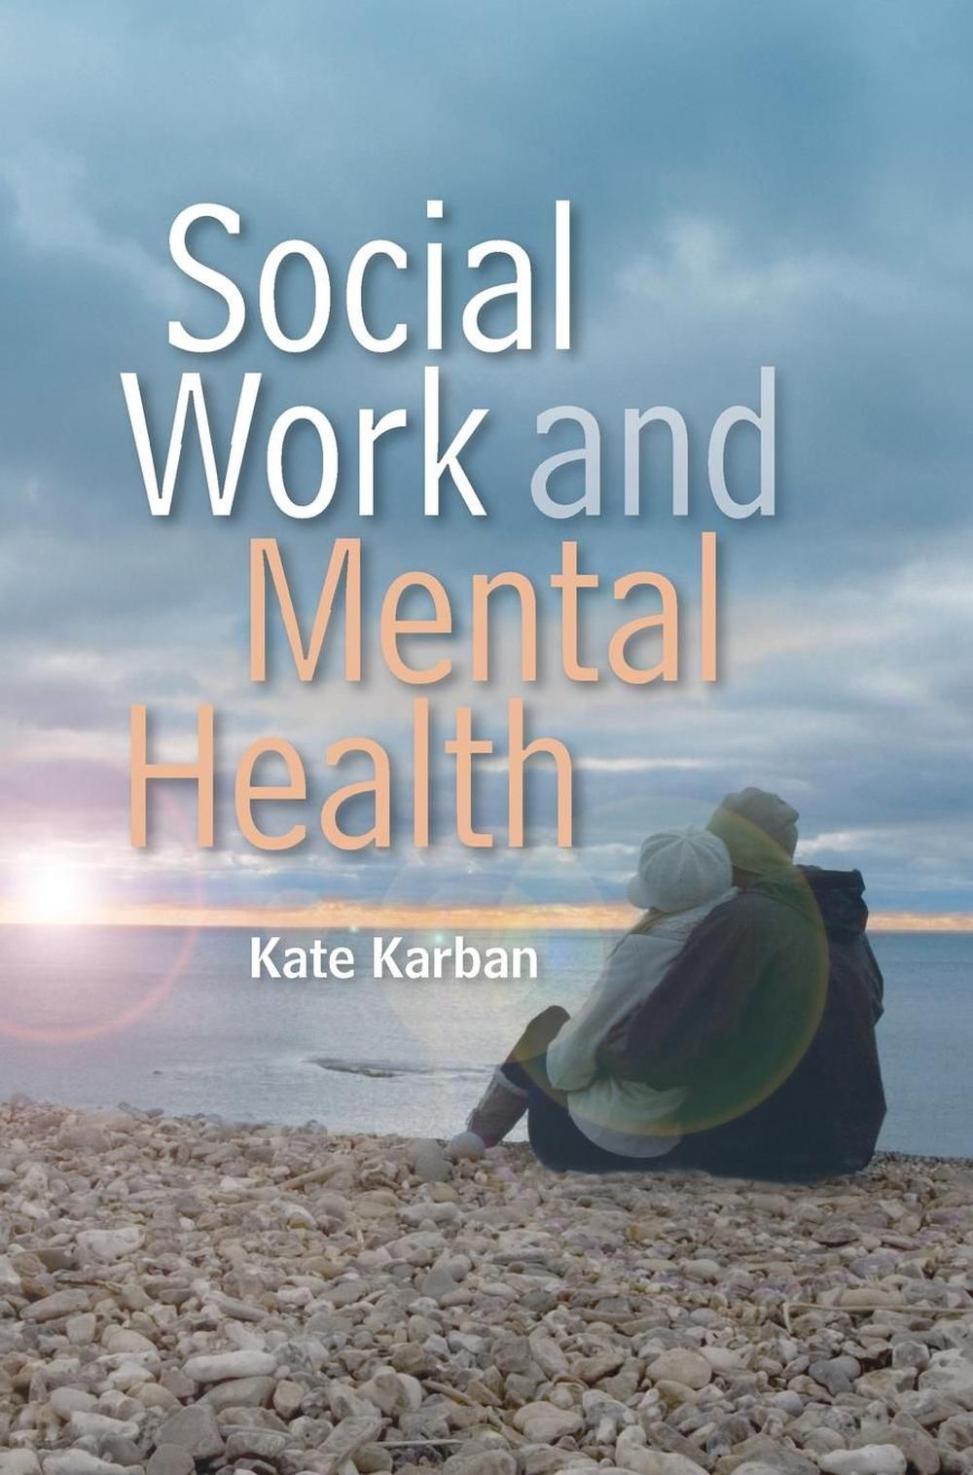 Jak pracownicy socjalni mogą wykorzystywać recenzje książek do wspierania zmian społecznych i podnoszenia świadomości na temat ważnych